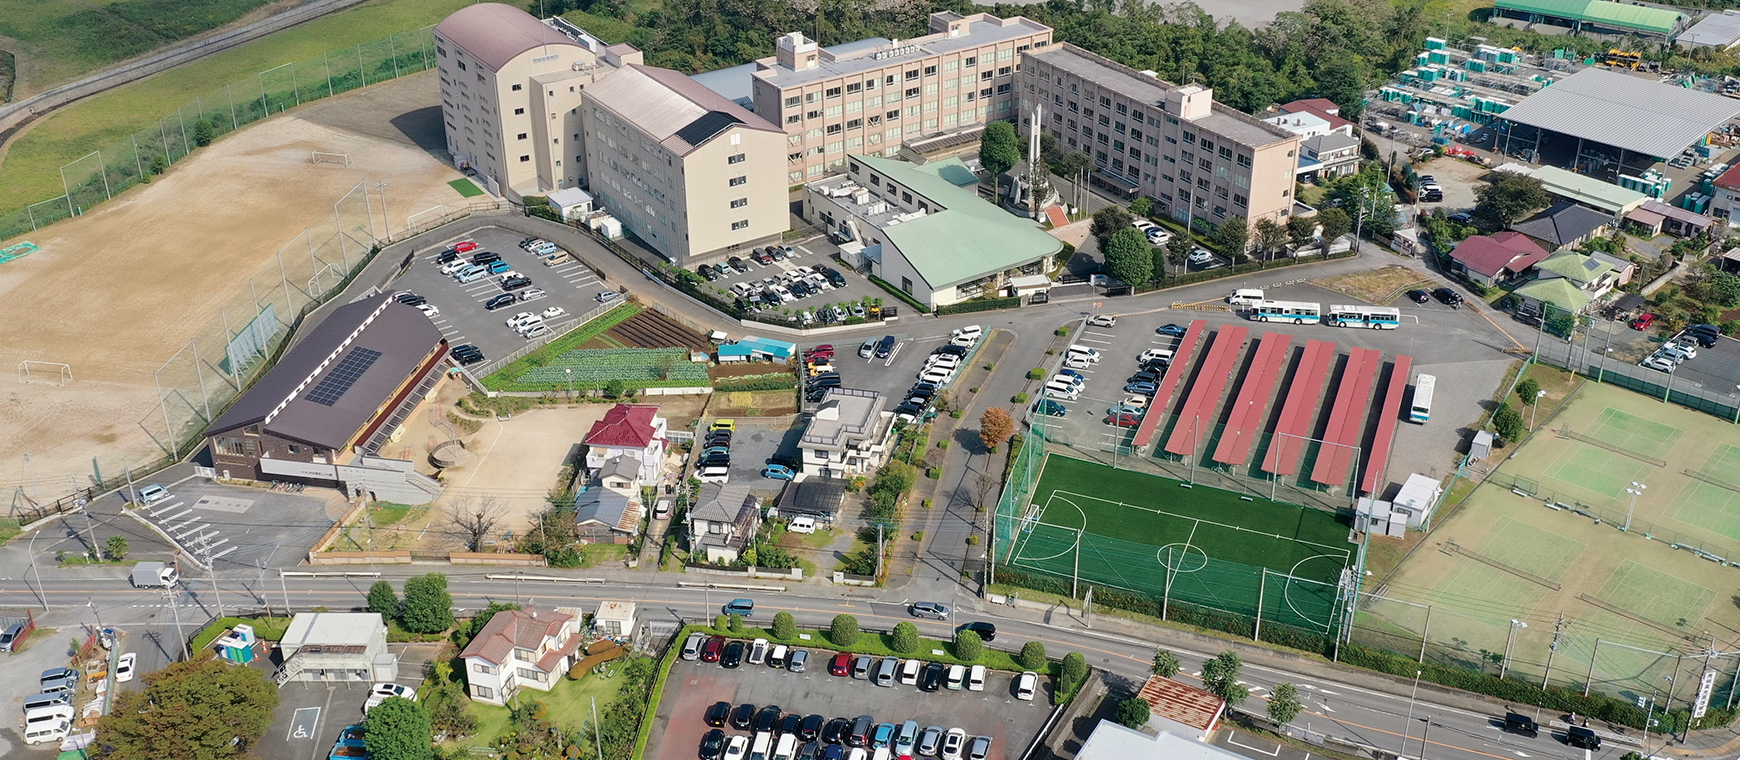 秀明英光高等学校敷地内の空撮写真です。